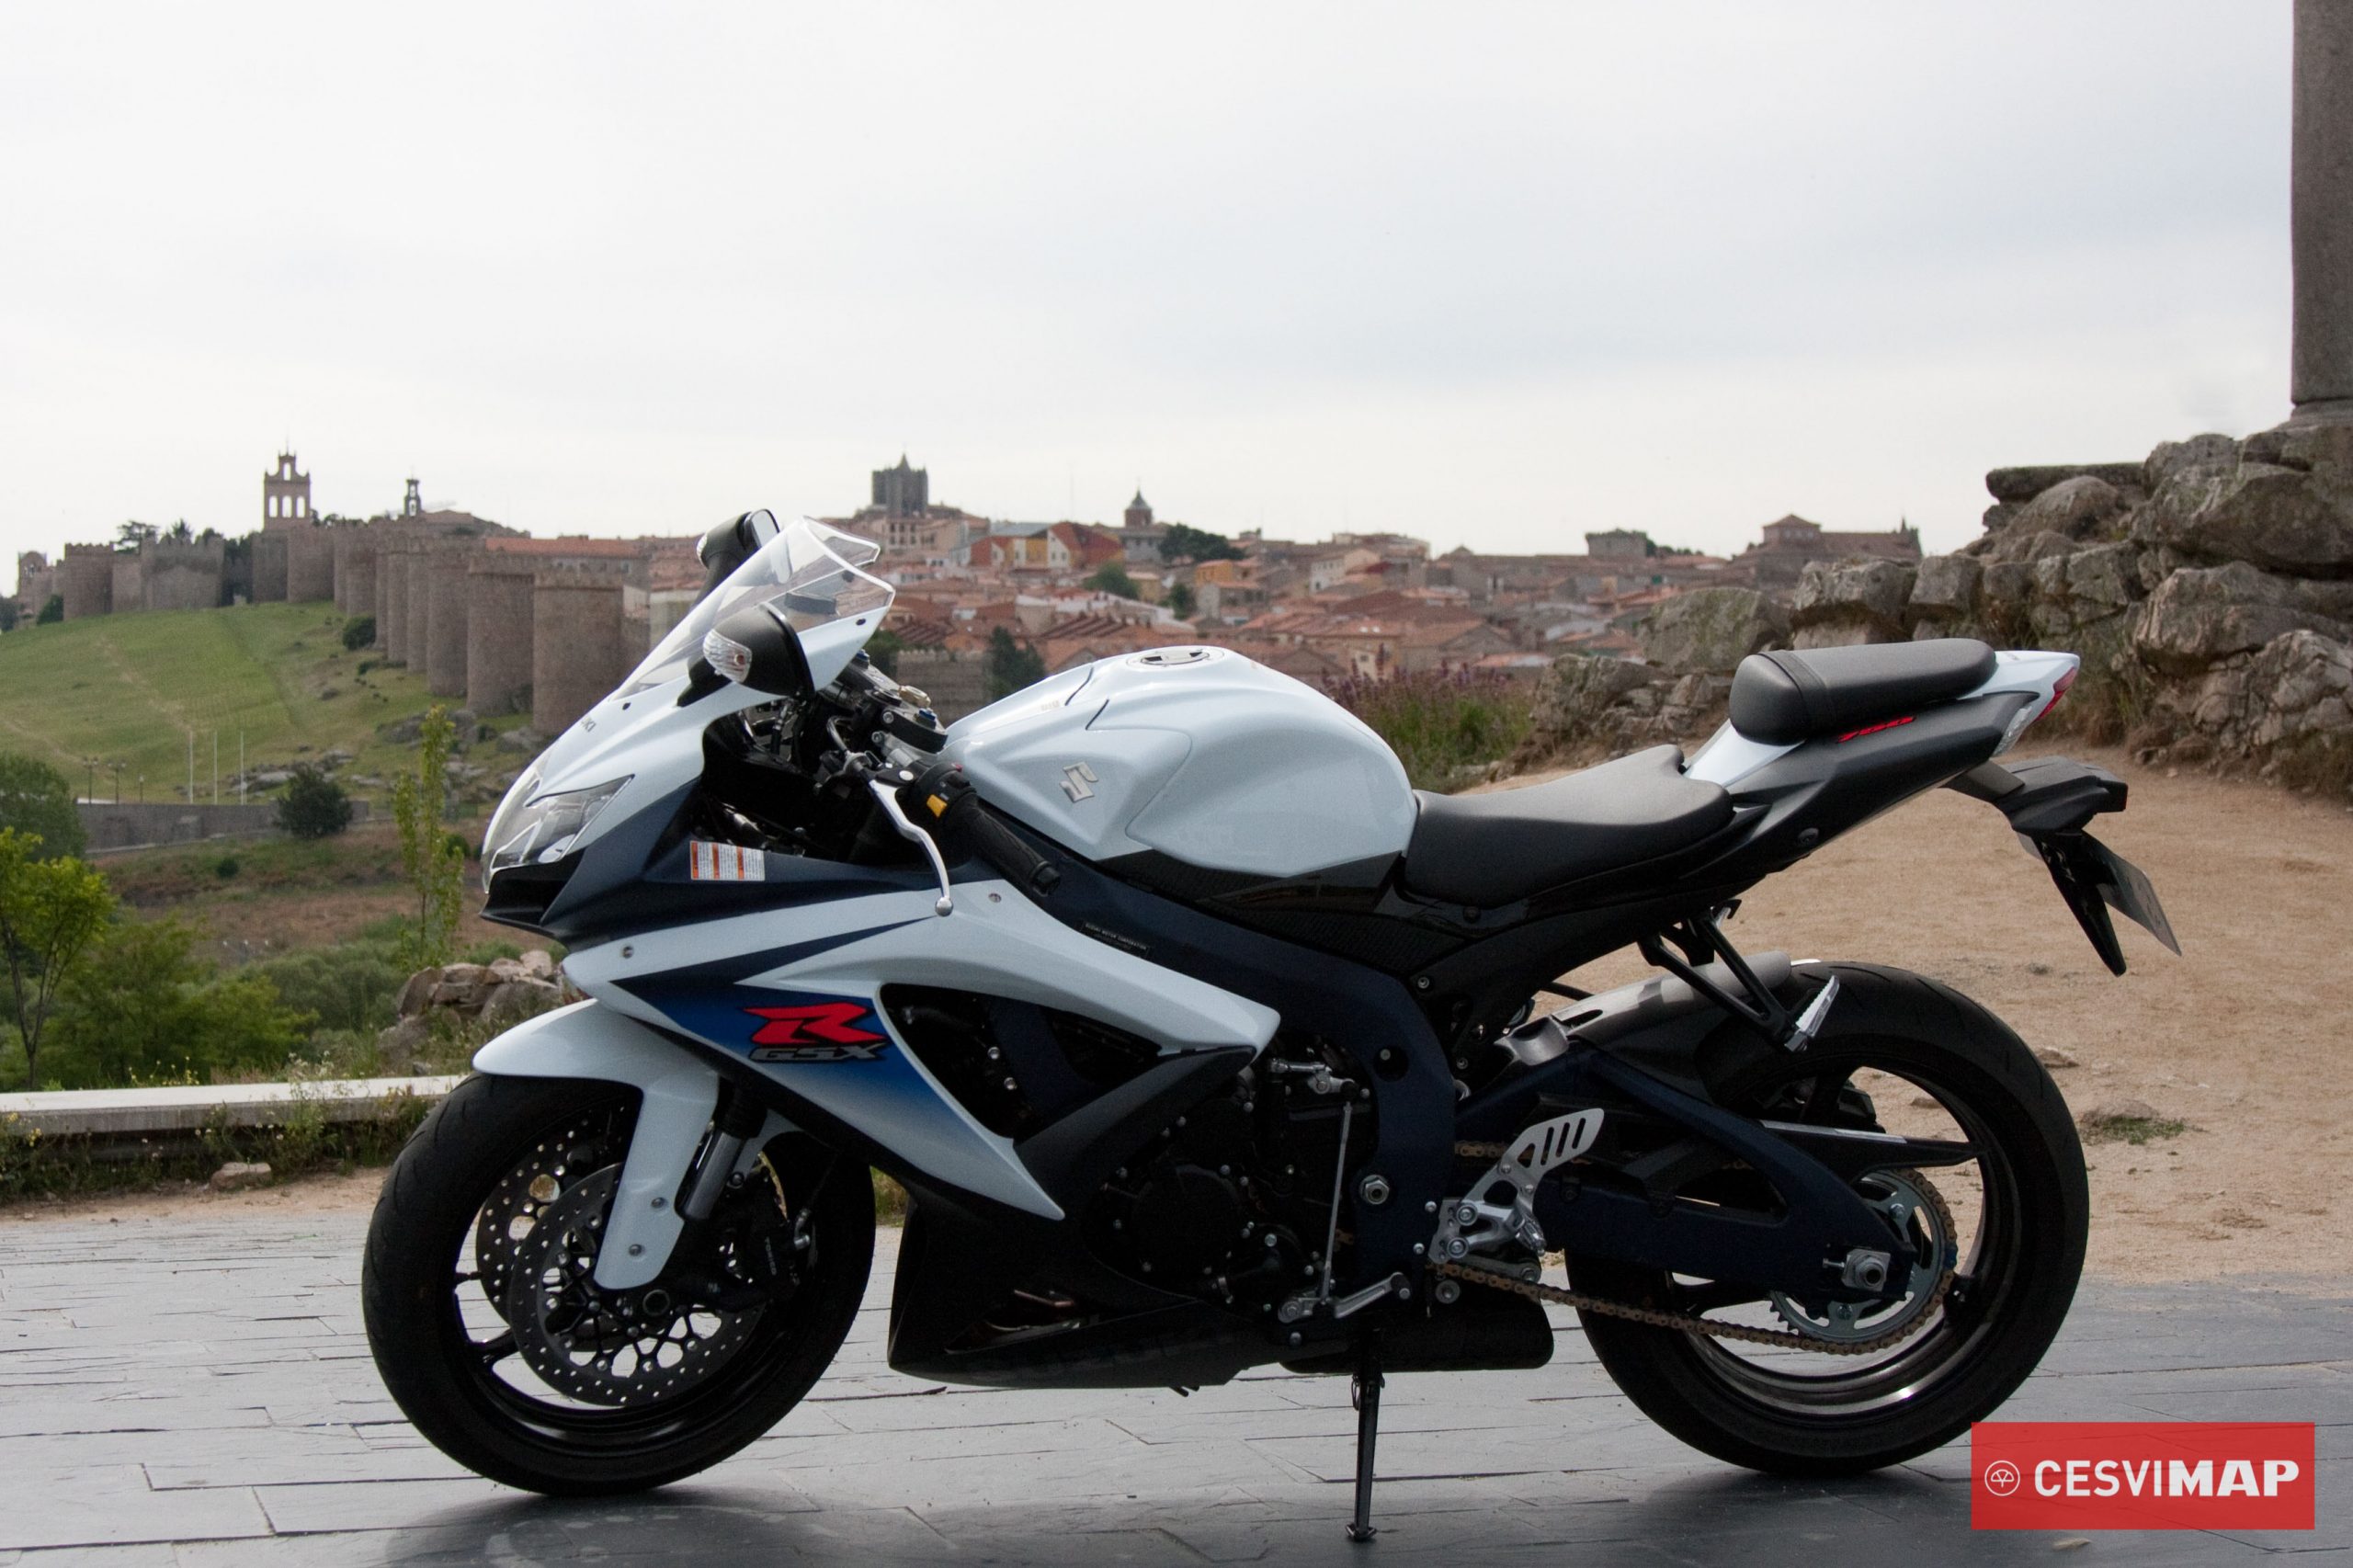  ¿Qué diferencia, en componentes, a una motocicleta sport de calle de una motocicleta de competición? 